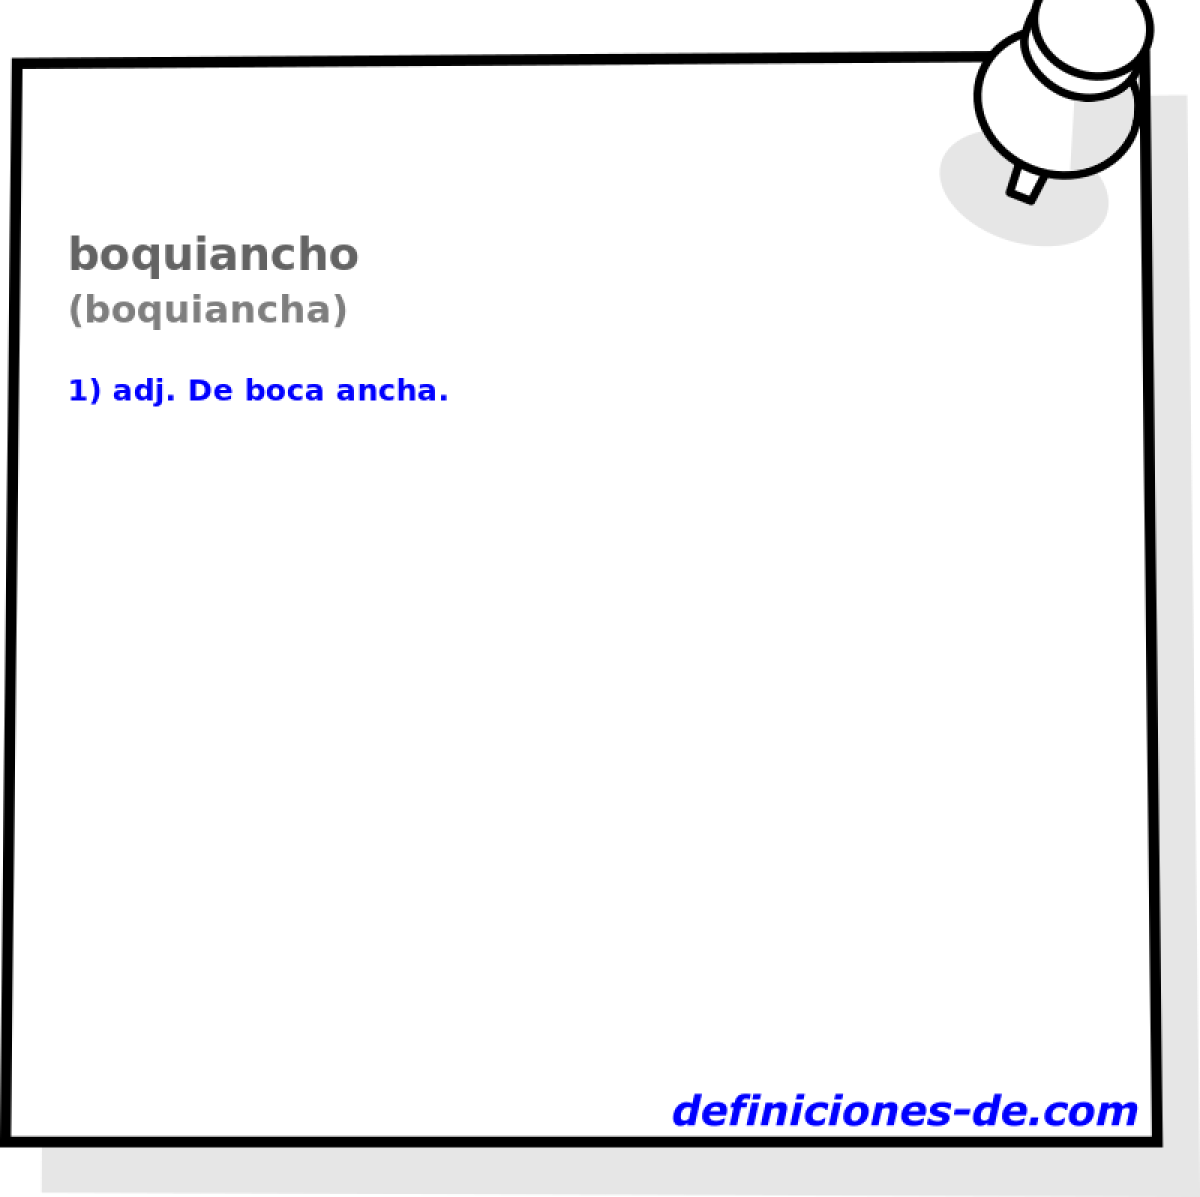 boquiancho (boquiancha)